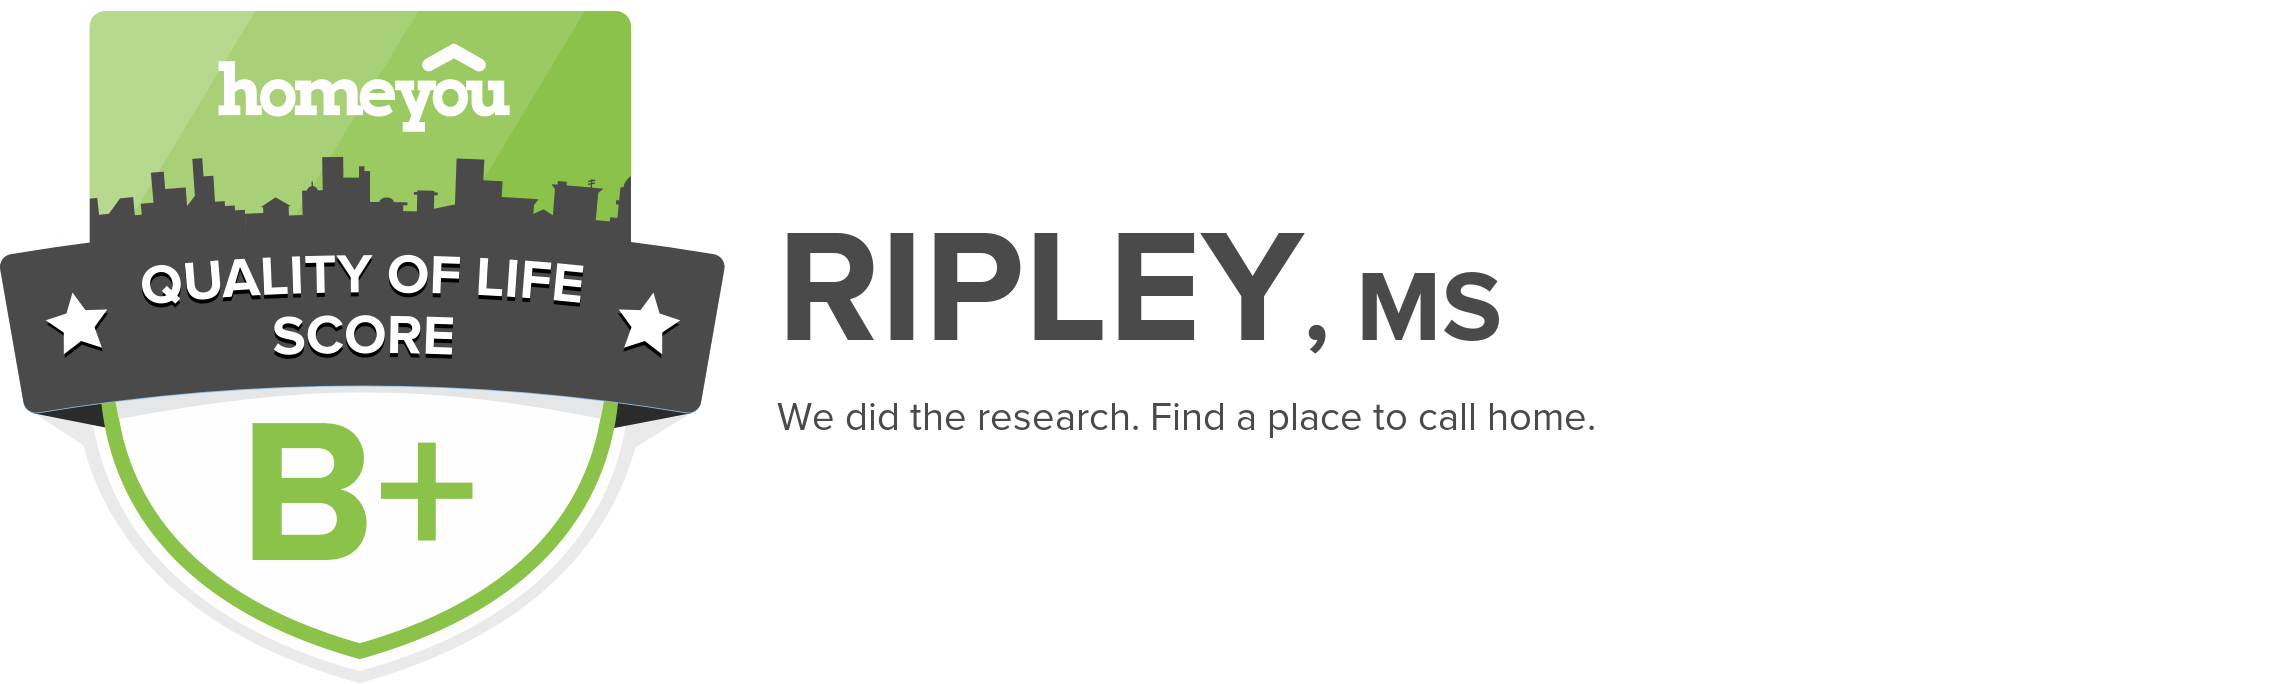 Ripley, MS